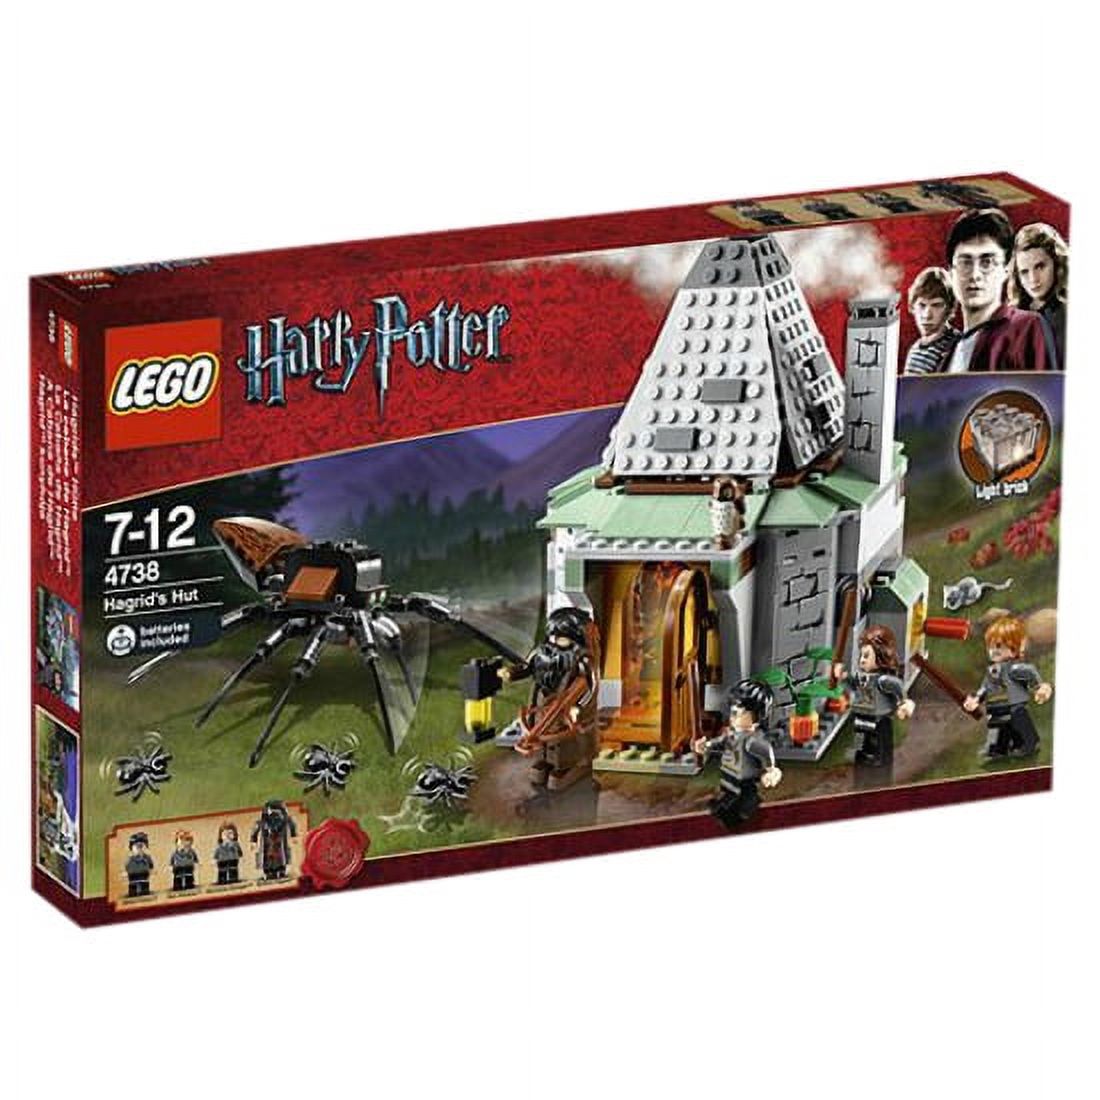 Lego Hagrid's Hut - image 1 of 2